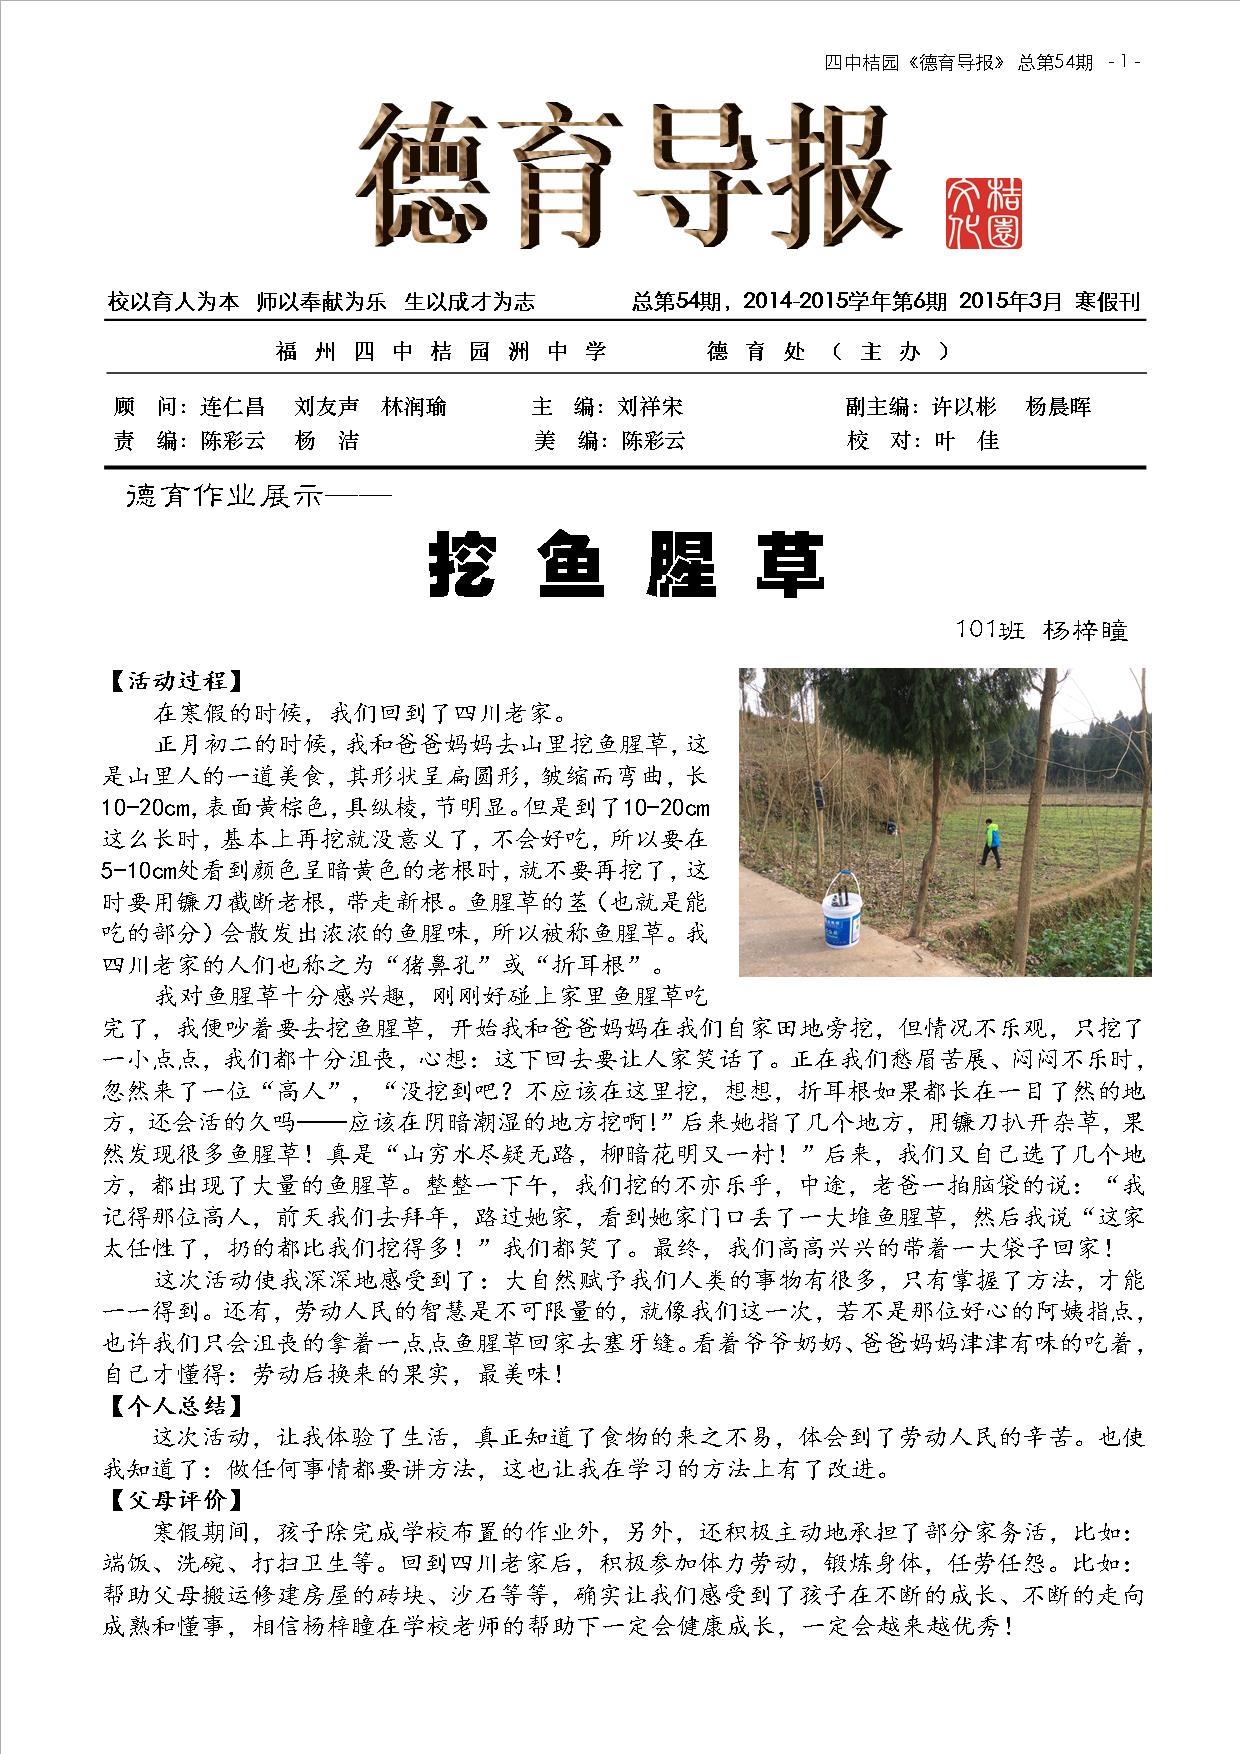 德育导报 NO.54  第6卷，第6期  2015年3月寒假刊 (1).jpg